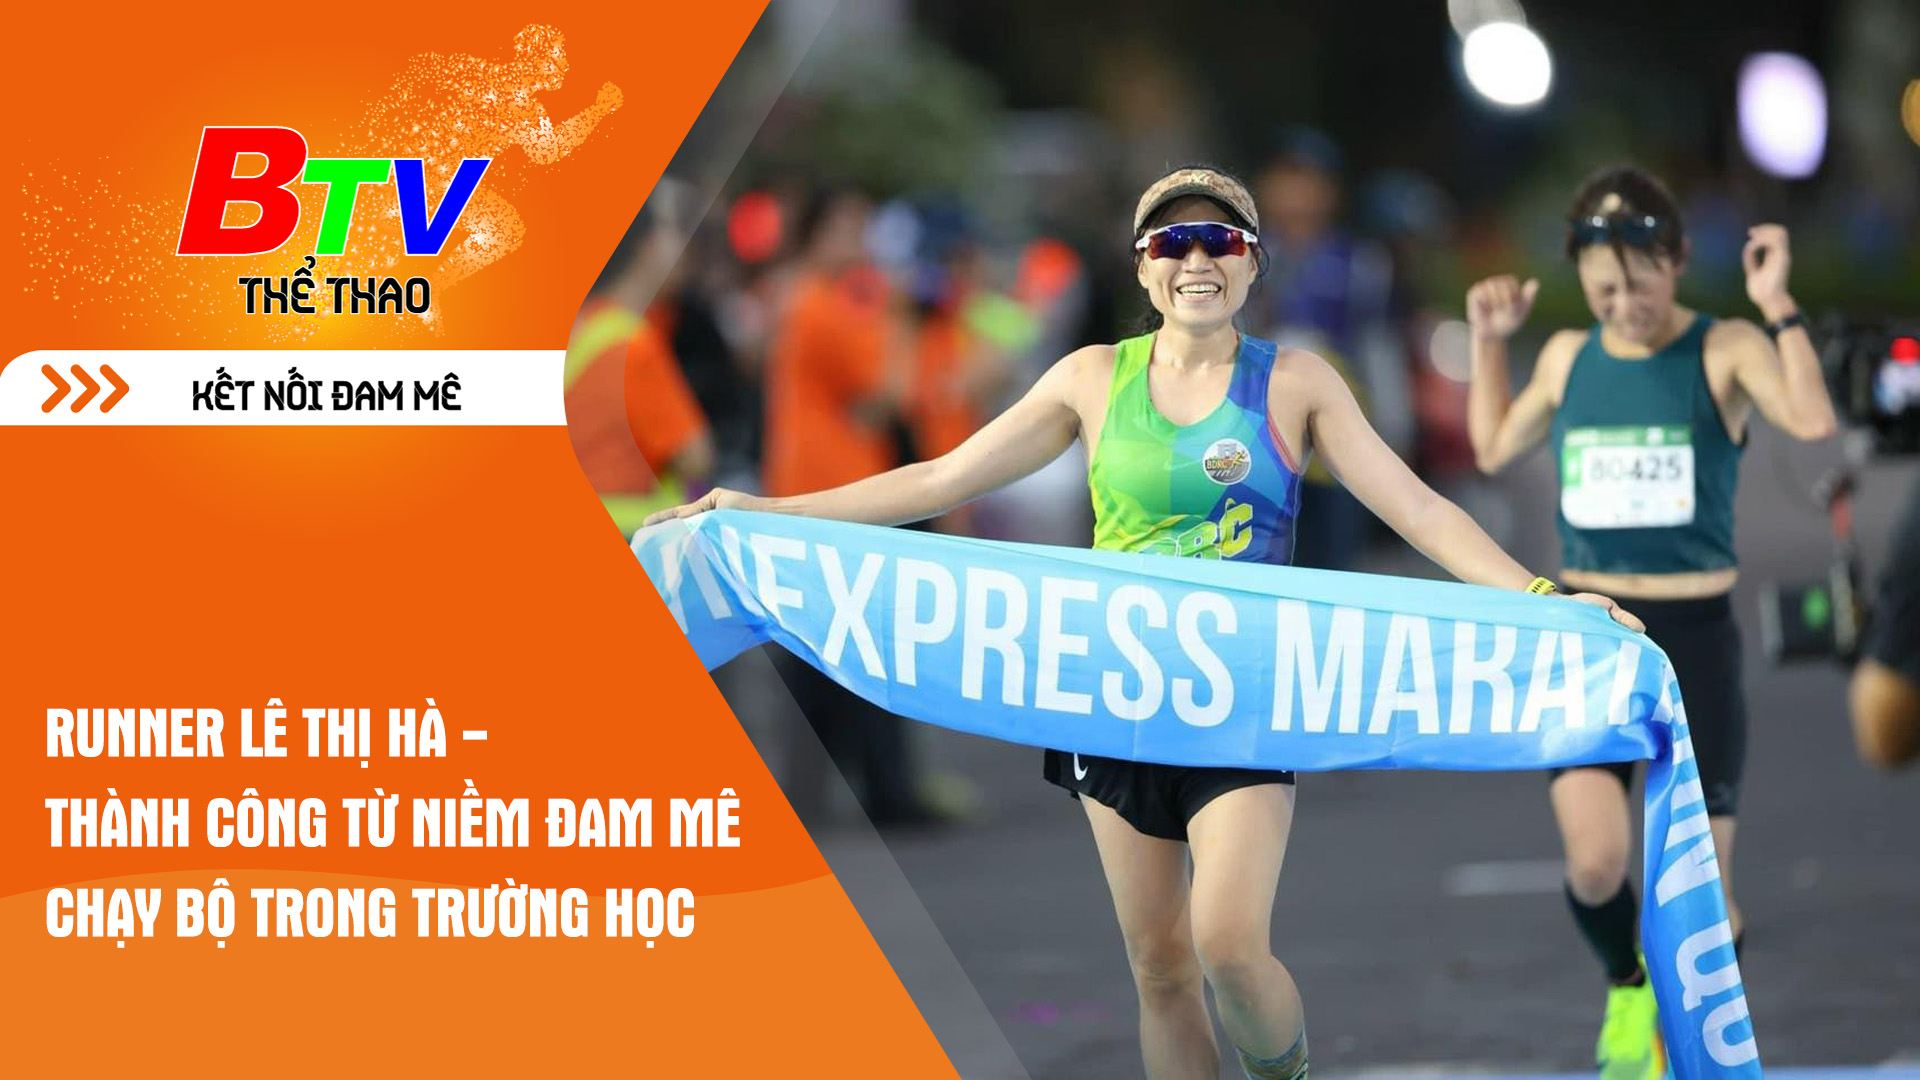 Runner Lê Thị Hà - Thành công từ niềm đam mê chạy bộ trong trường học